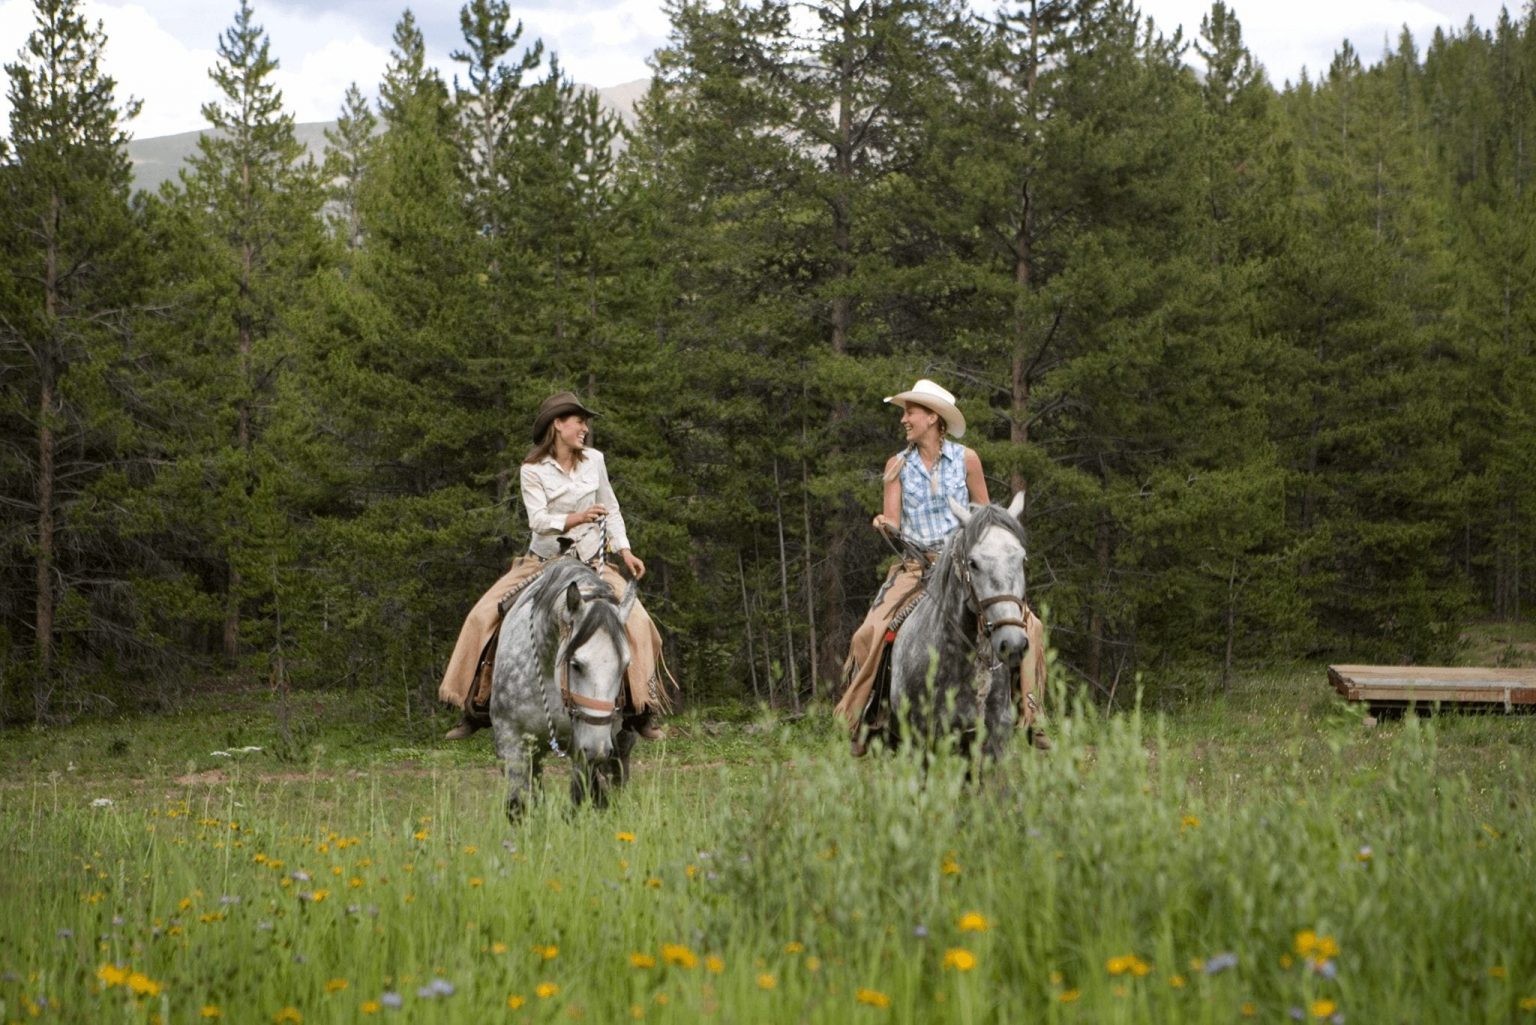 Two women horseback riding in Colorado.